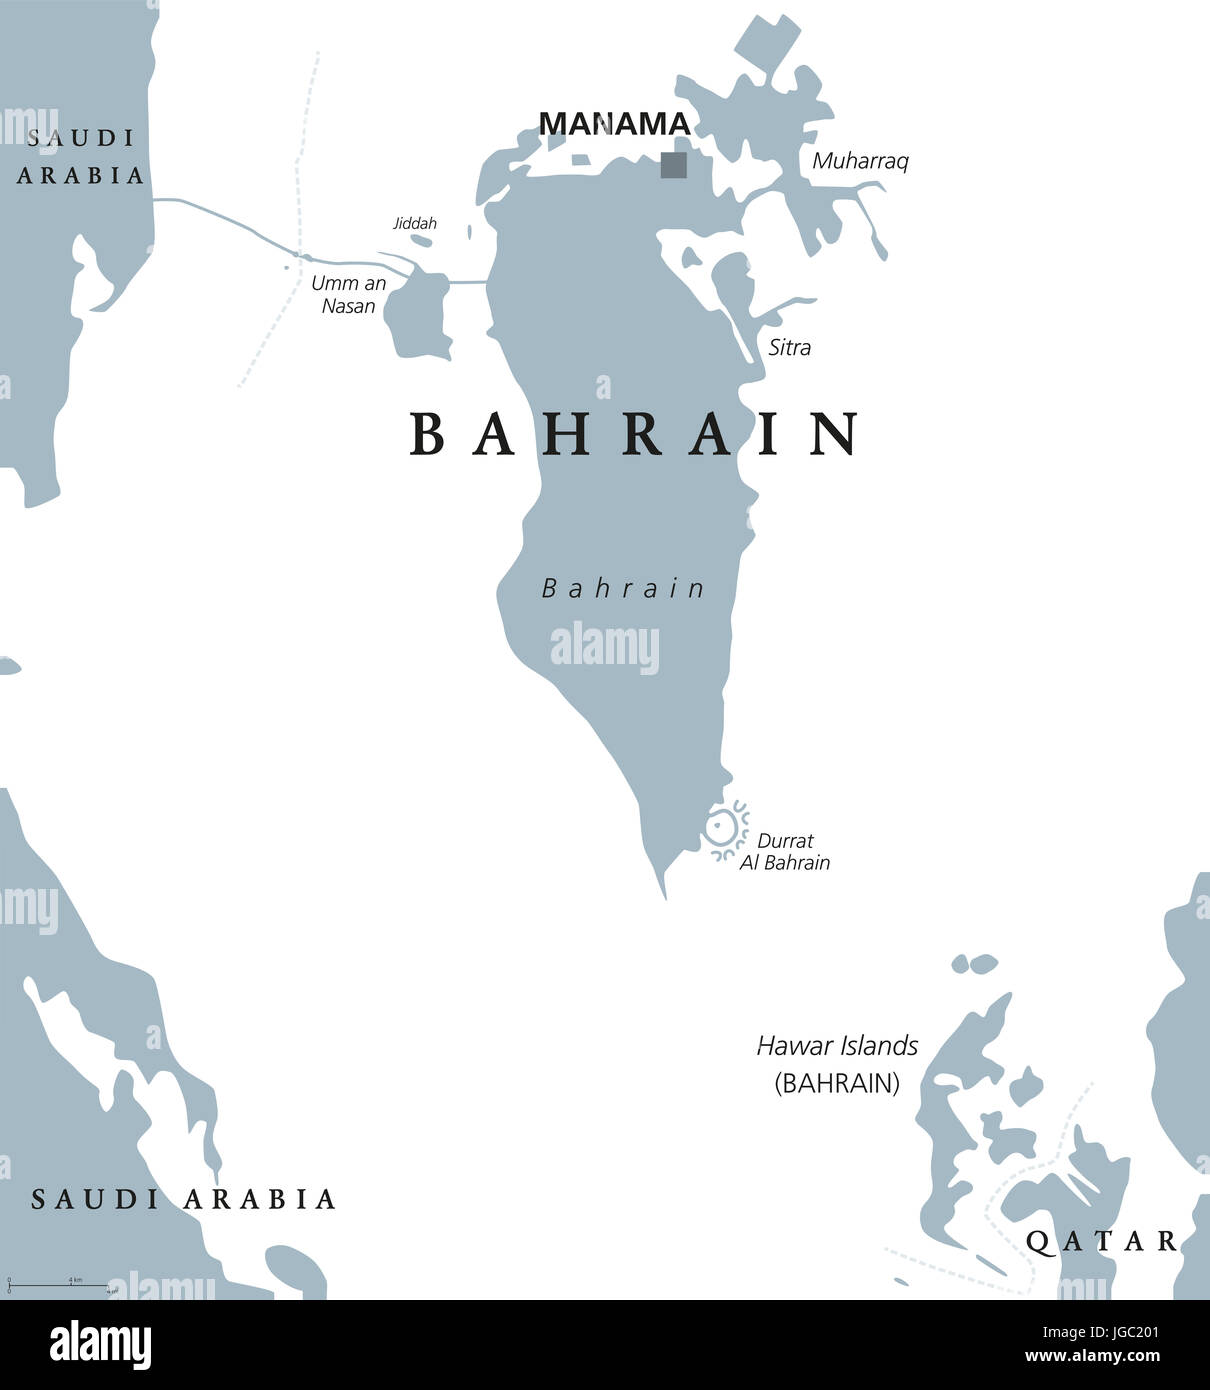 Bahrain politische Karte mit Hauptstadt Manama. Königreich in den Persischen Golf. Inselstaat und Archipel zwischen Katar und Saudi-Arabien. Stockfoto